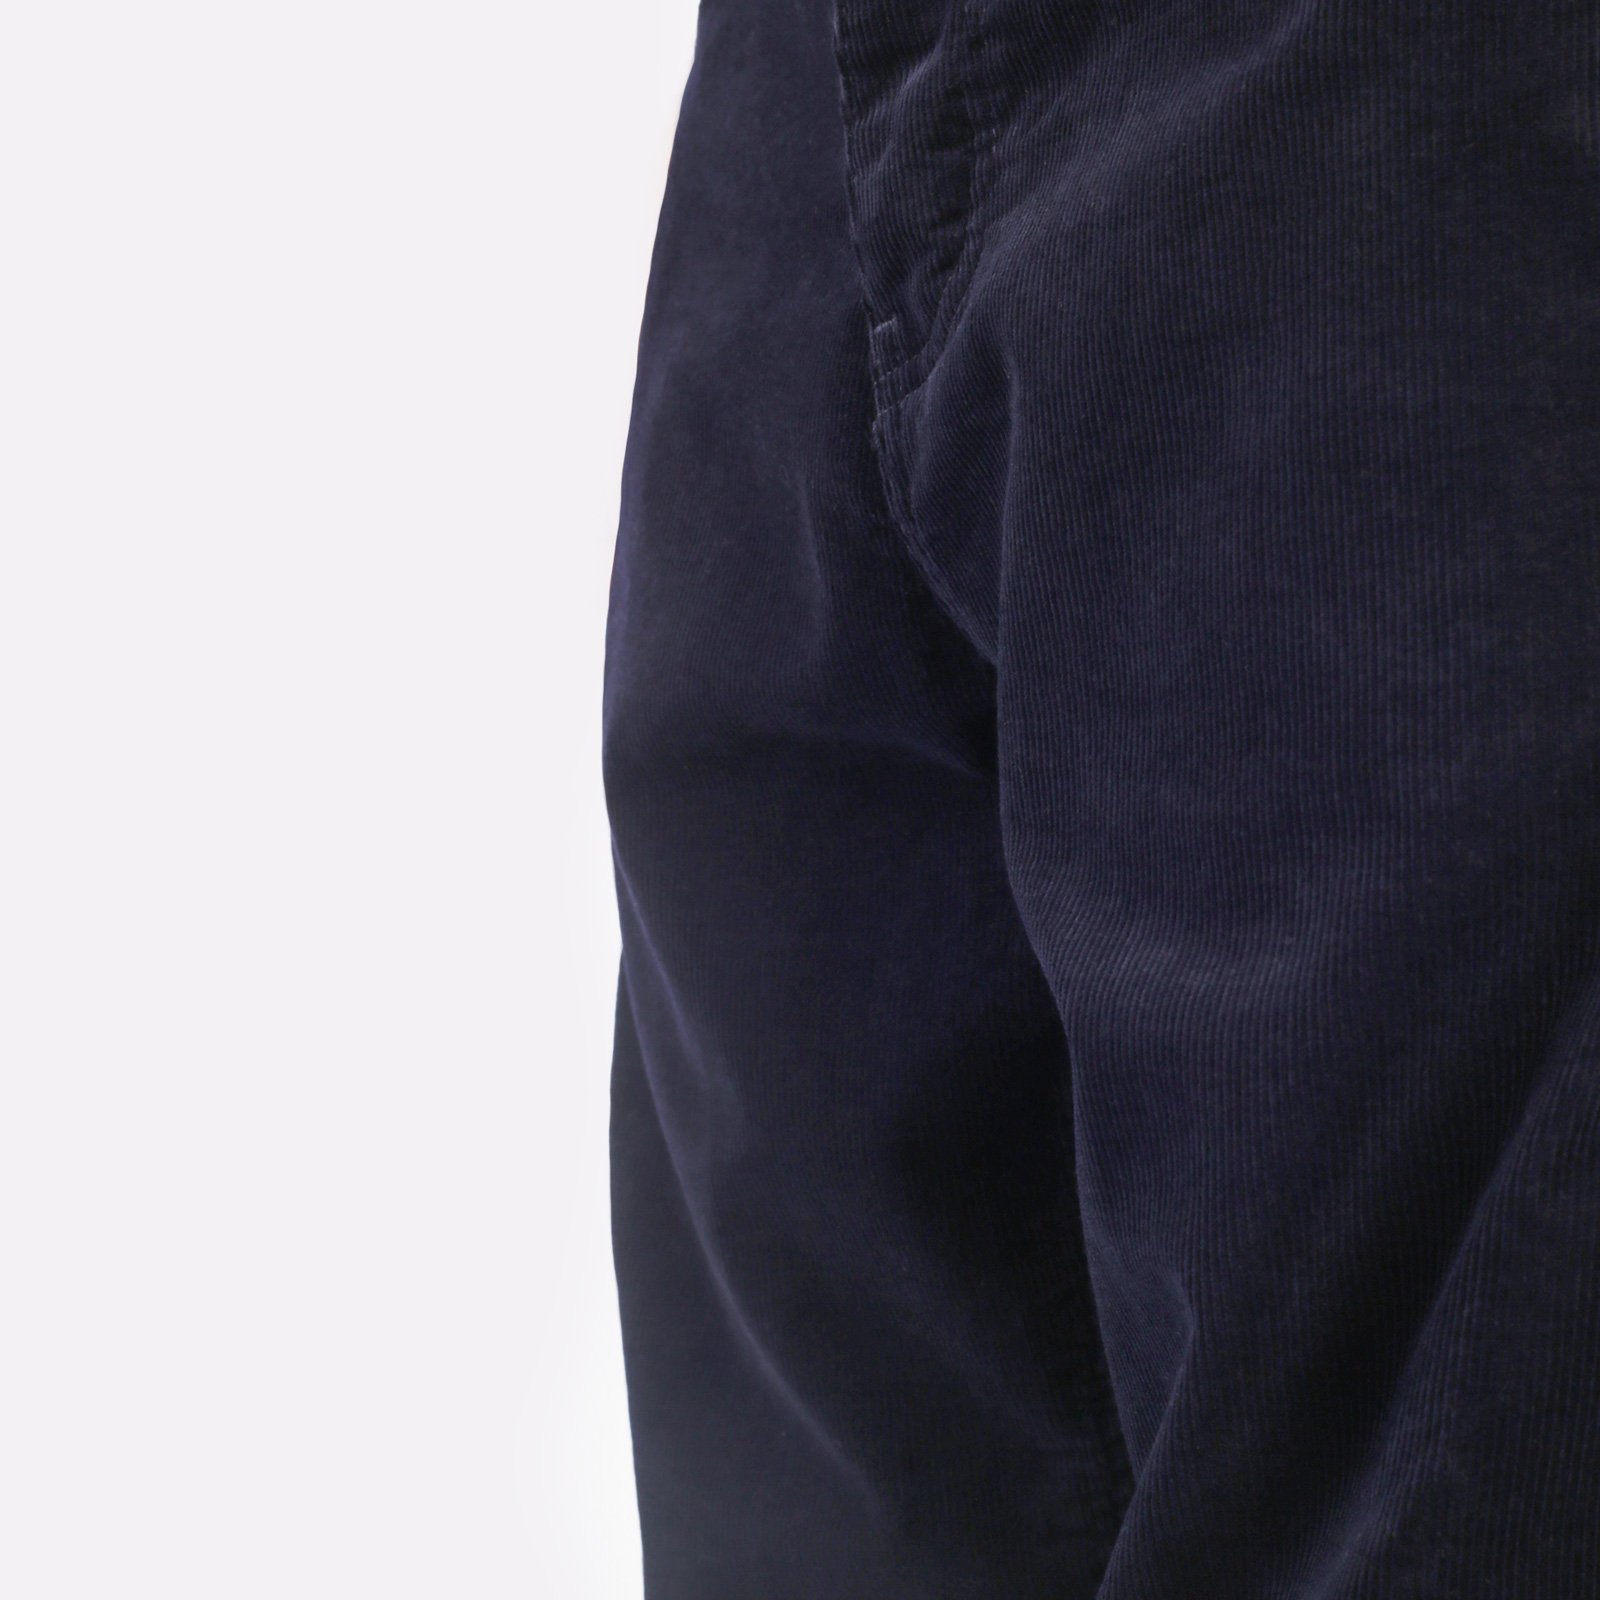 мужские брюки Carhartt WIP Newel Pant  (I031456-dark_navy)  - цена, описание, фото 5